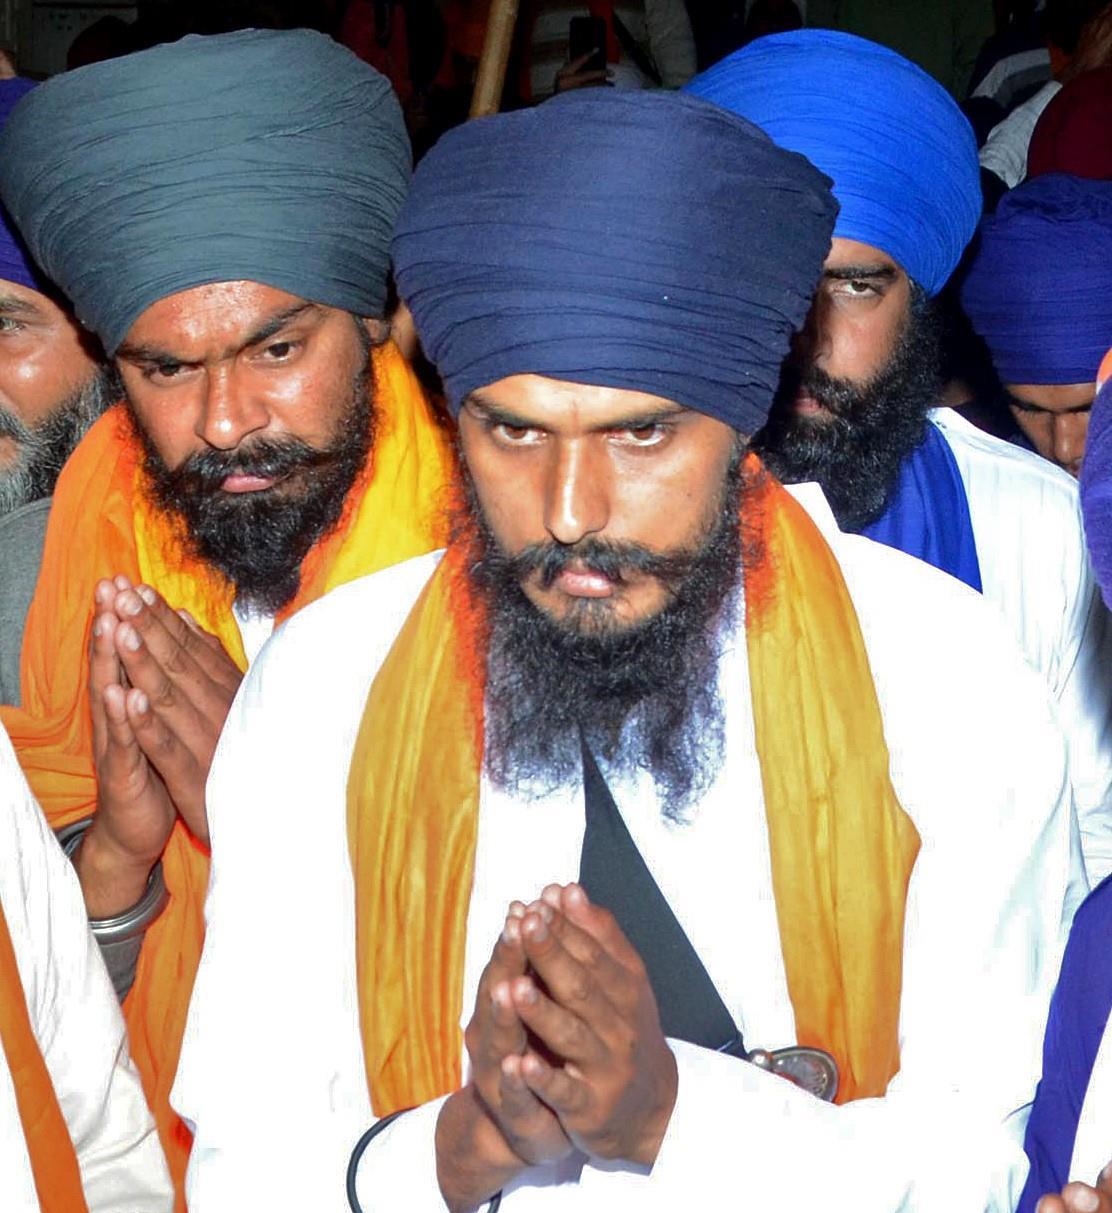 Amritpal Singh's 'larger than life' aura gone, says Jalandhar DIG